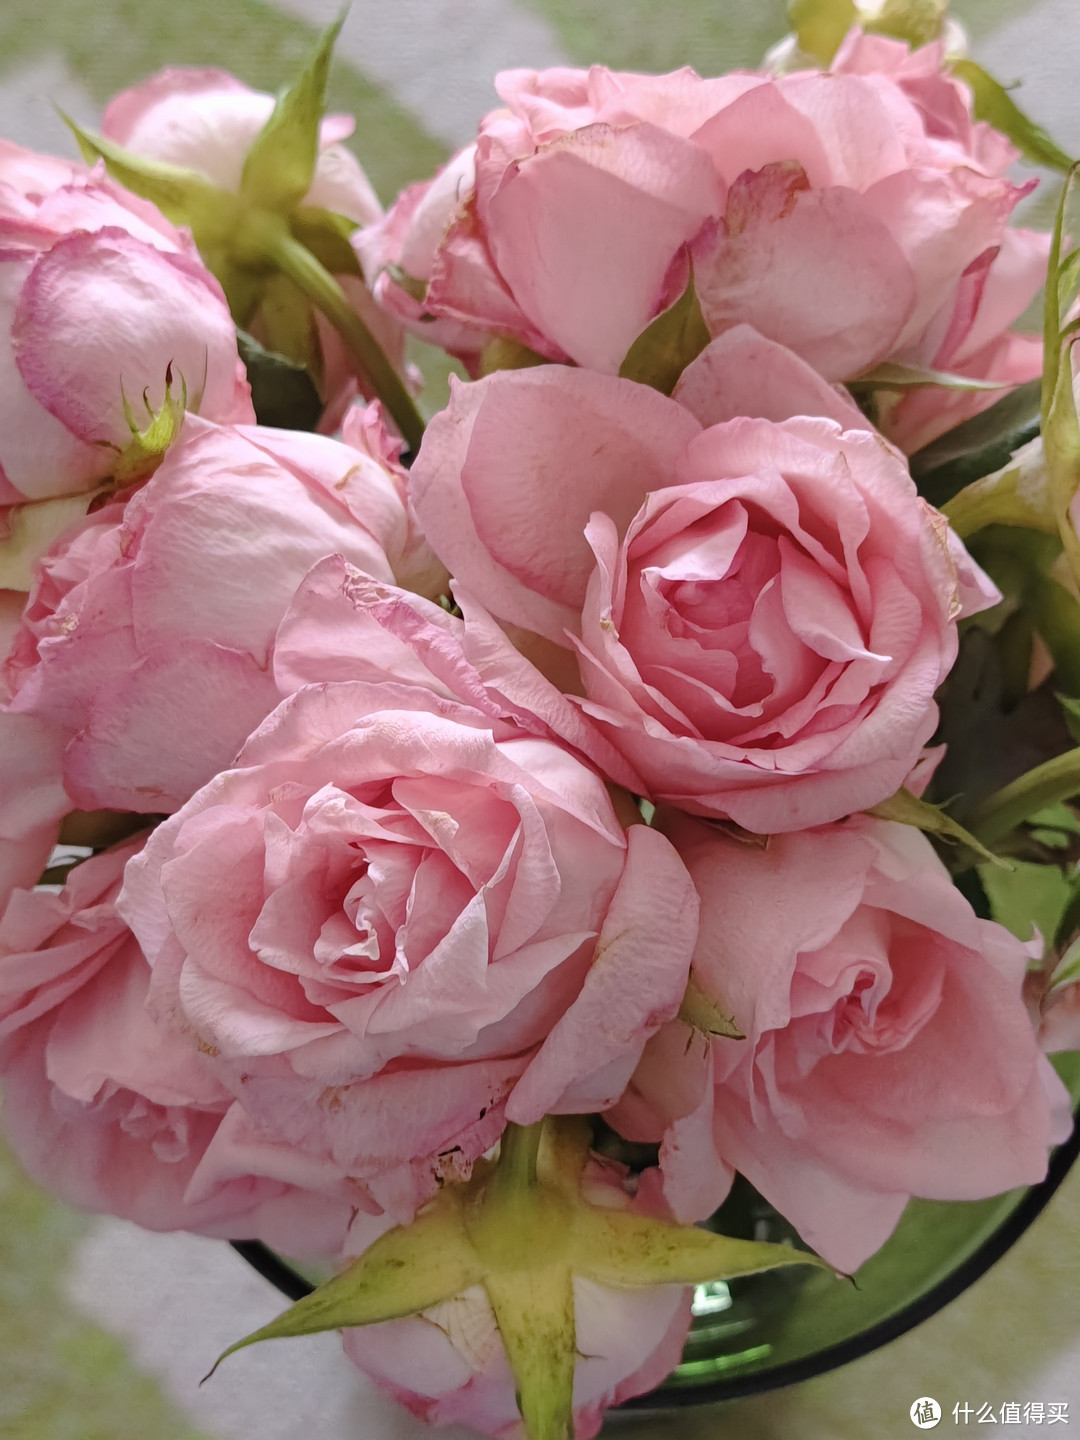 粉红玫瑰美丽的色彩谁能不爱呢～